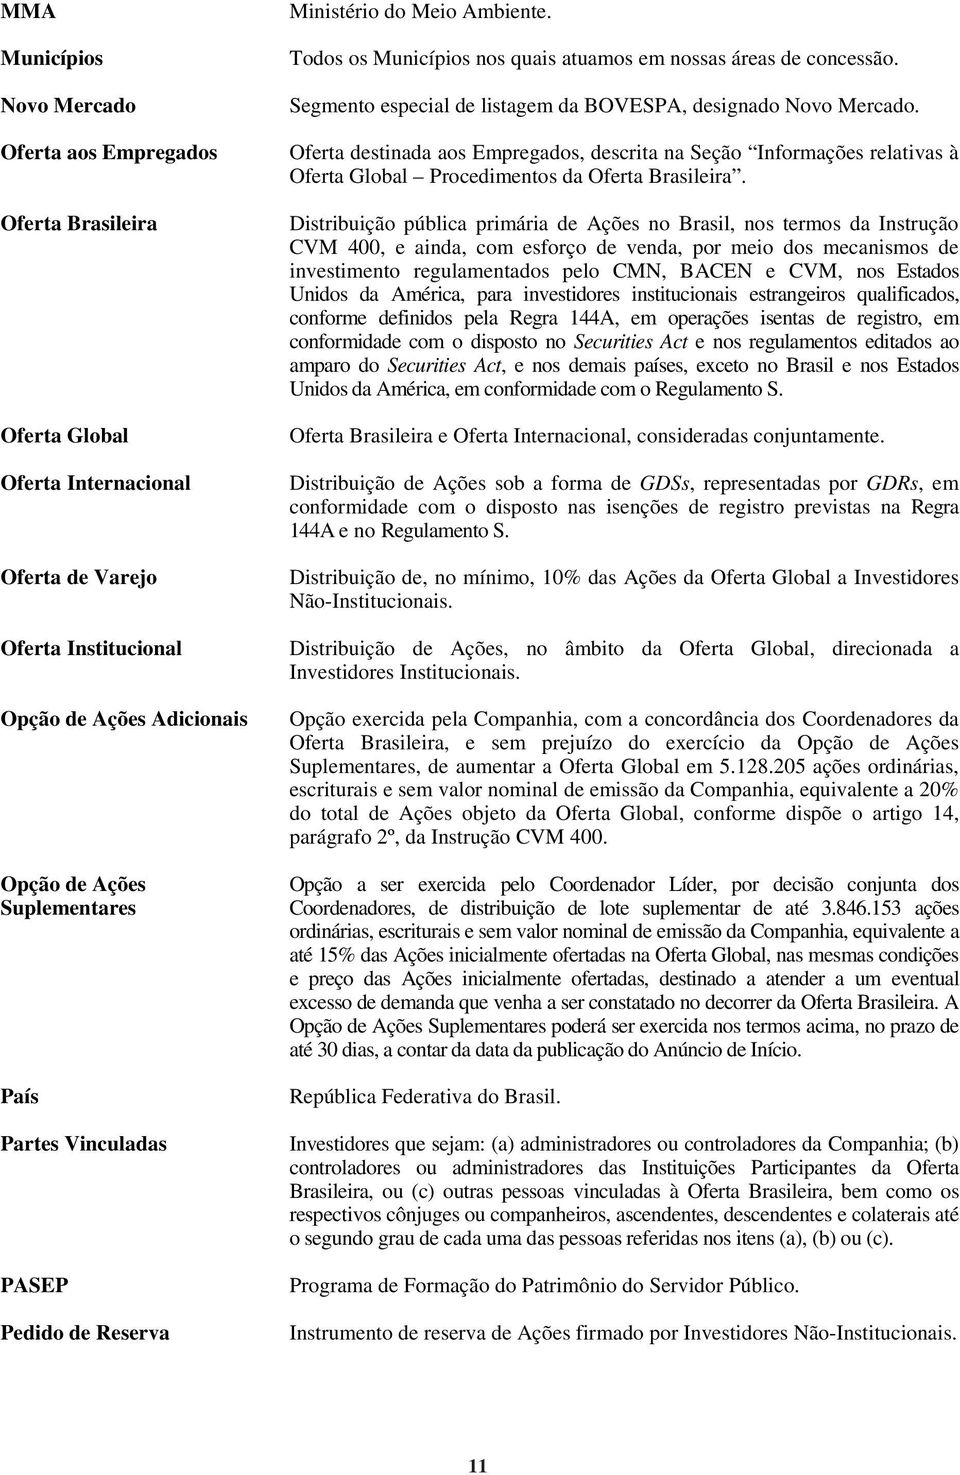 Segmento especial de listagem da BOVESPA, designado Novo Mercado. Oferta destinada aos Empregados, descrita na Seção Informações relativas à Oferta Global Procedimentos da Oferta Brasileira.